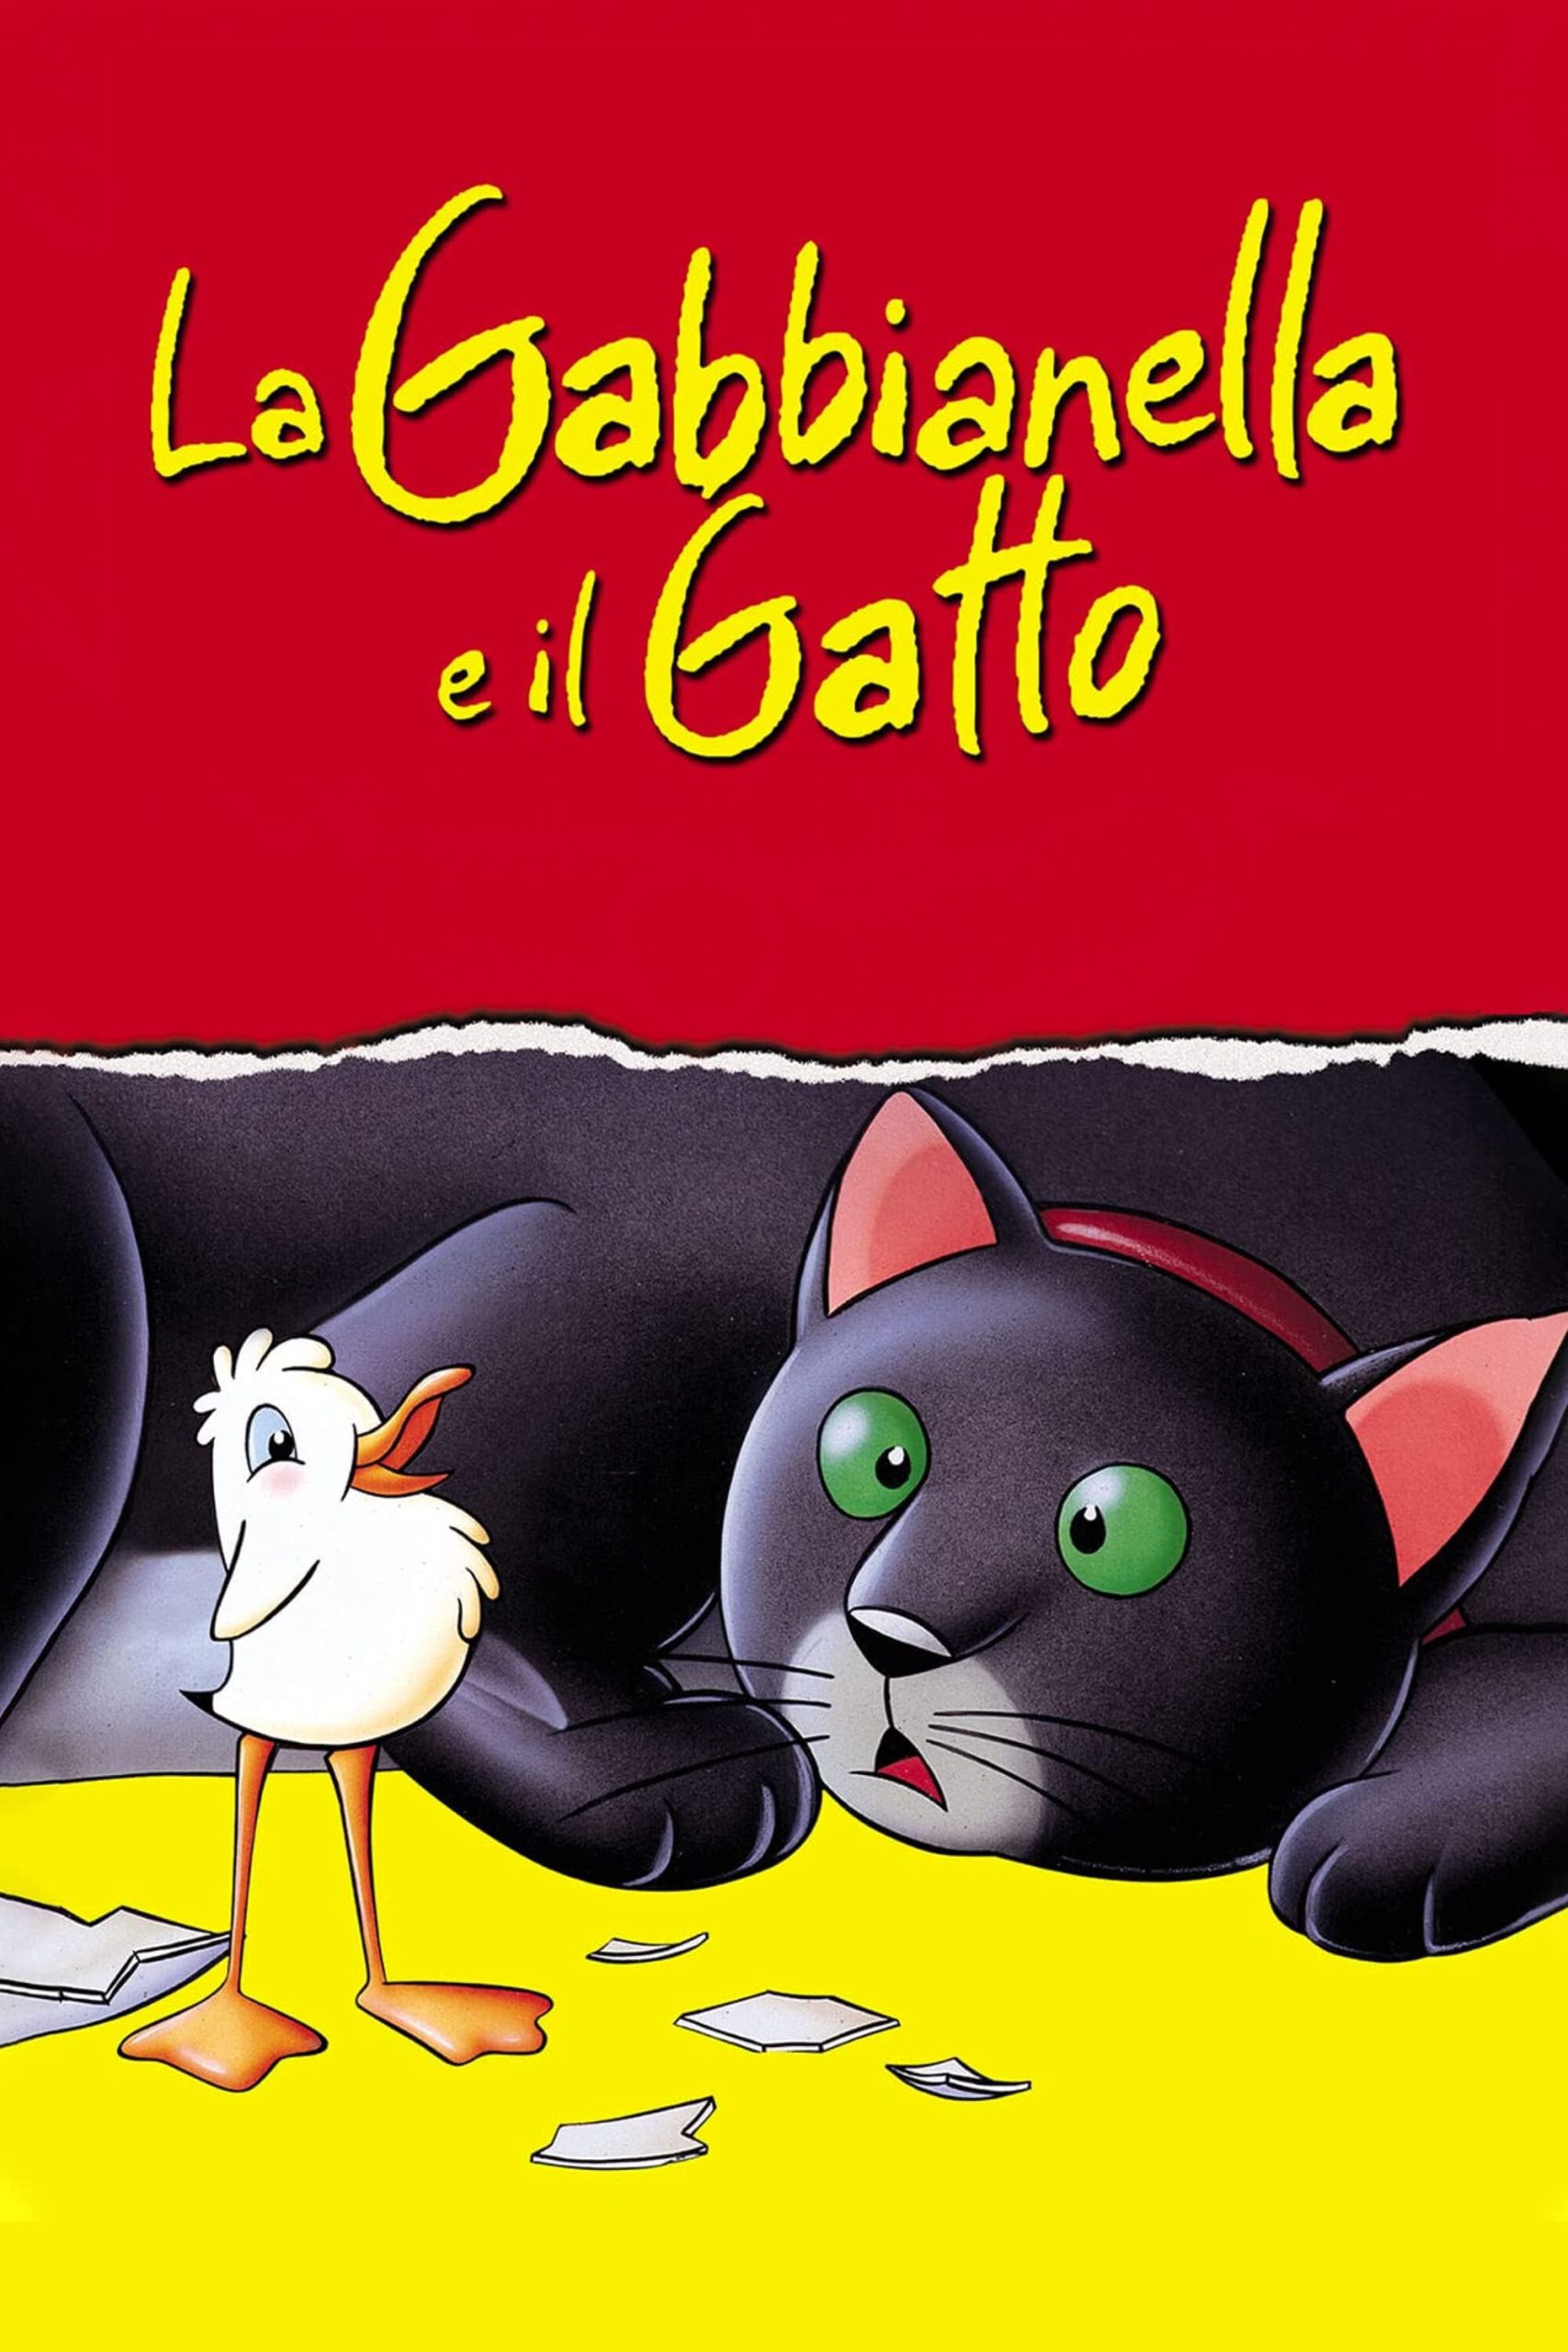 La gabbianella e il gatto [HD] (1998)